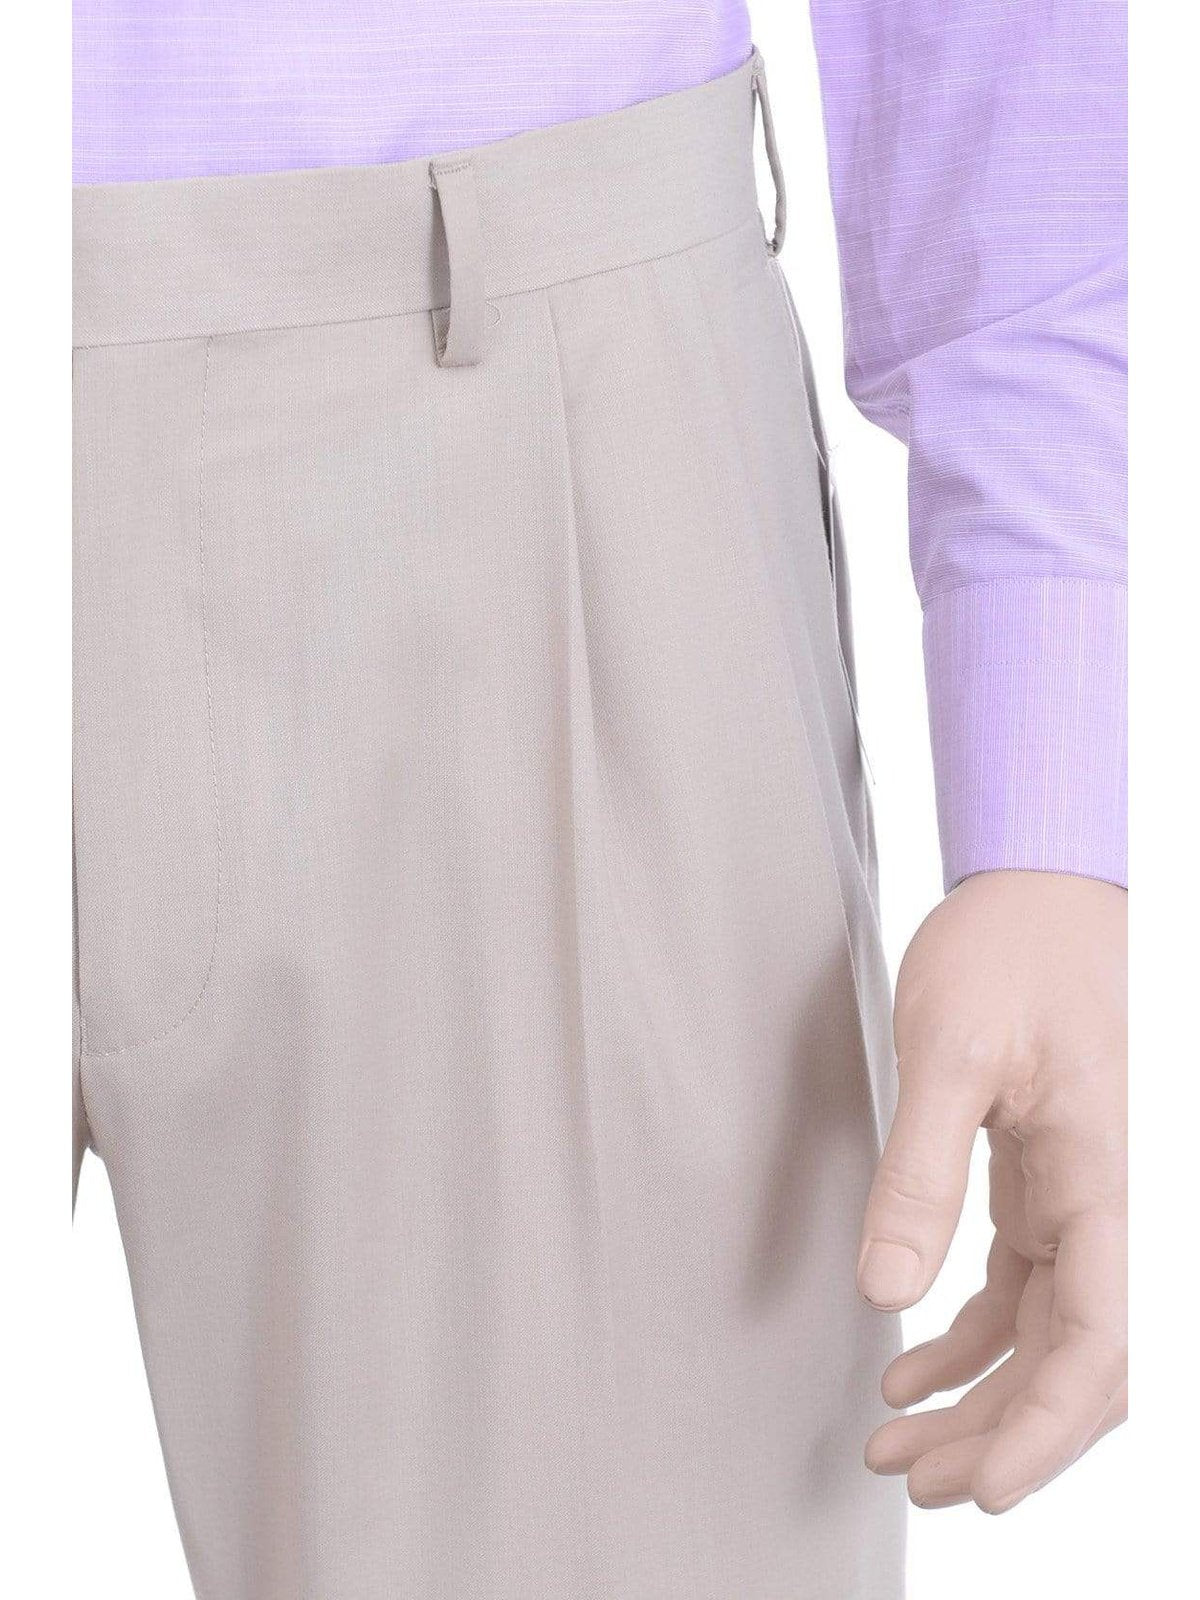 Ralph Lauren Classic Fit Solid Beige Washable Double Pleated Dress Pants - The Suit Depot